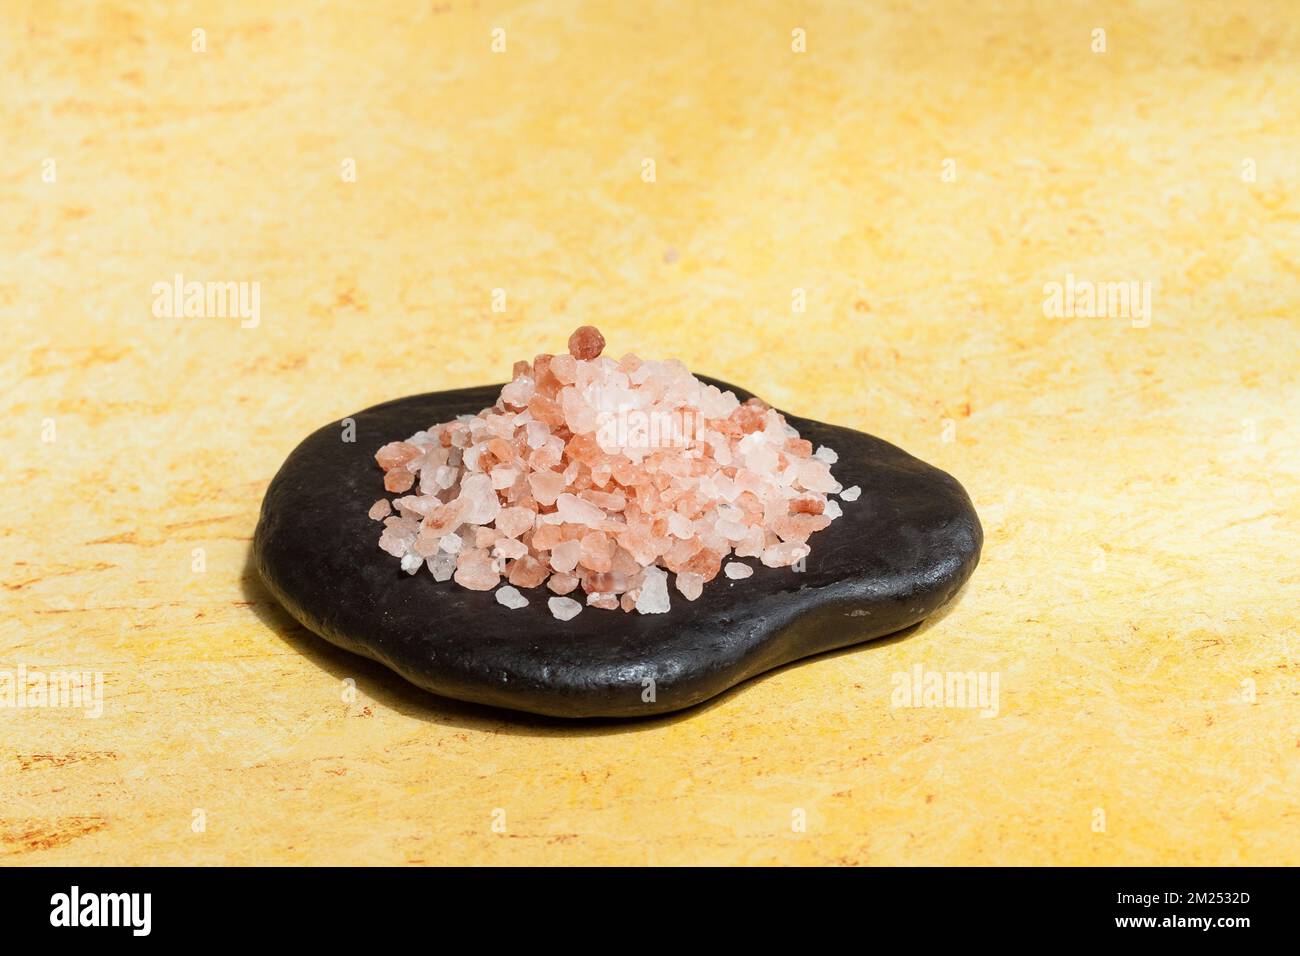 Himalayan Pink Salt Crystals - Gourmet Red Rock Crystals from Pakistan. Stock Photo